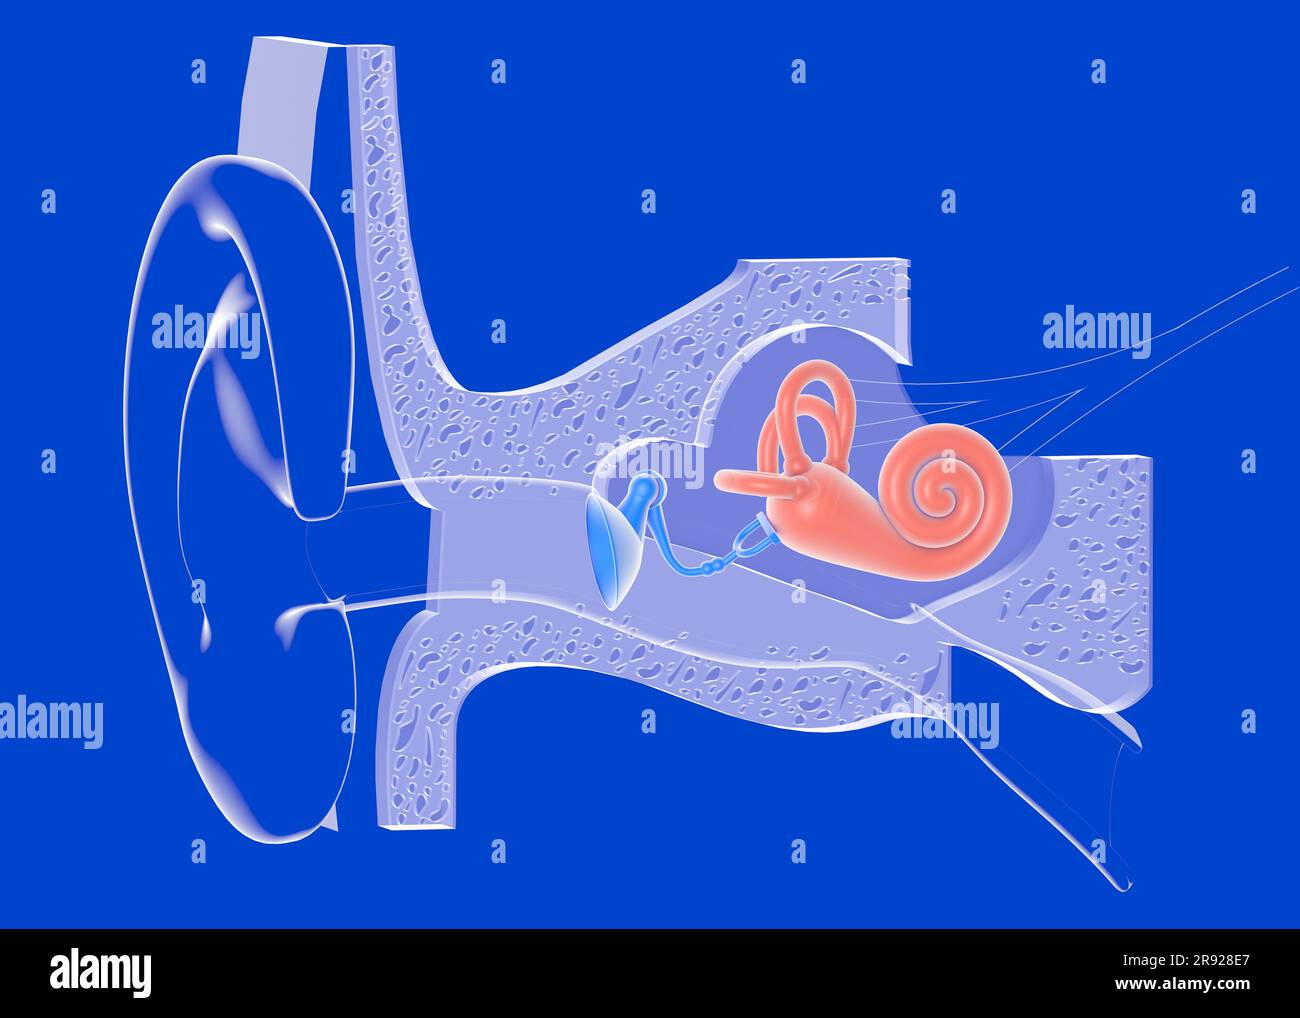 illustrazione 3d dell'anatomia dell'orecchio interno su sfondo blu. Rappresentazione grafica trasparente dell'interno, della lumaca, delle ossa, del timpano, dei nervi e dell'e Foto Stock